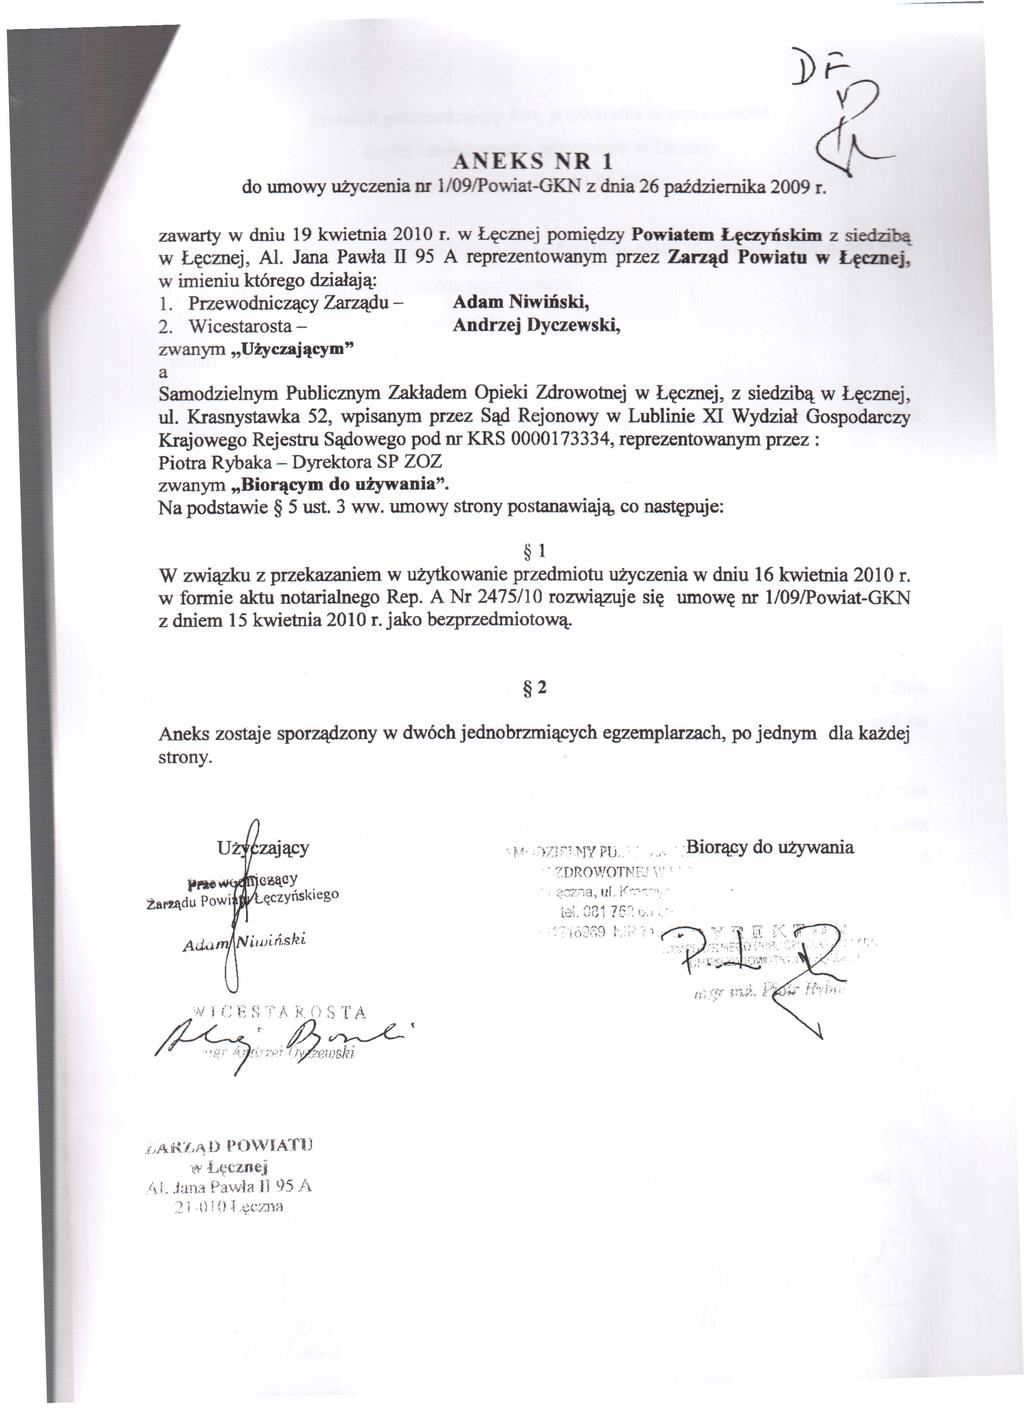 A EKS R 1 do umowy użyczenia nr 1/09/Powiat-GKN z dnia 26 października 2009 r. J>F- J?- zawarty w dniu 19 kwietnia 2010 r. w Łęcznej pomiędzy Powiatem Lęczyńskim z sied.zl"bą w Lęcznej, Al.